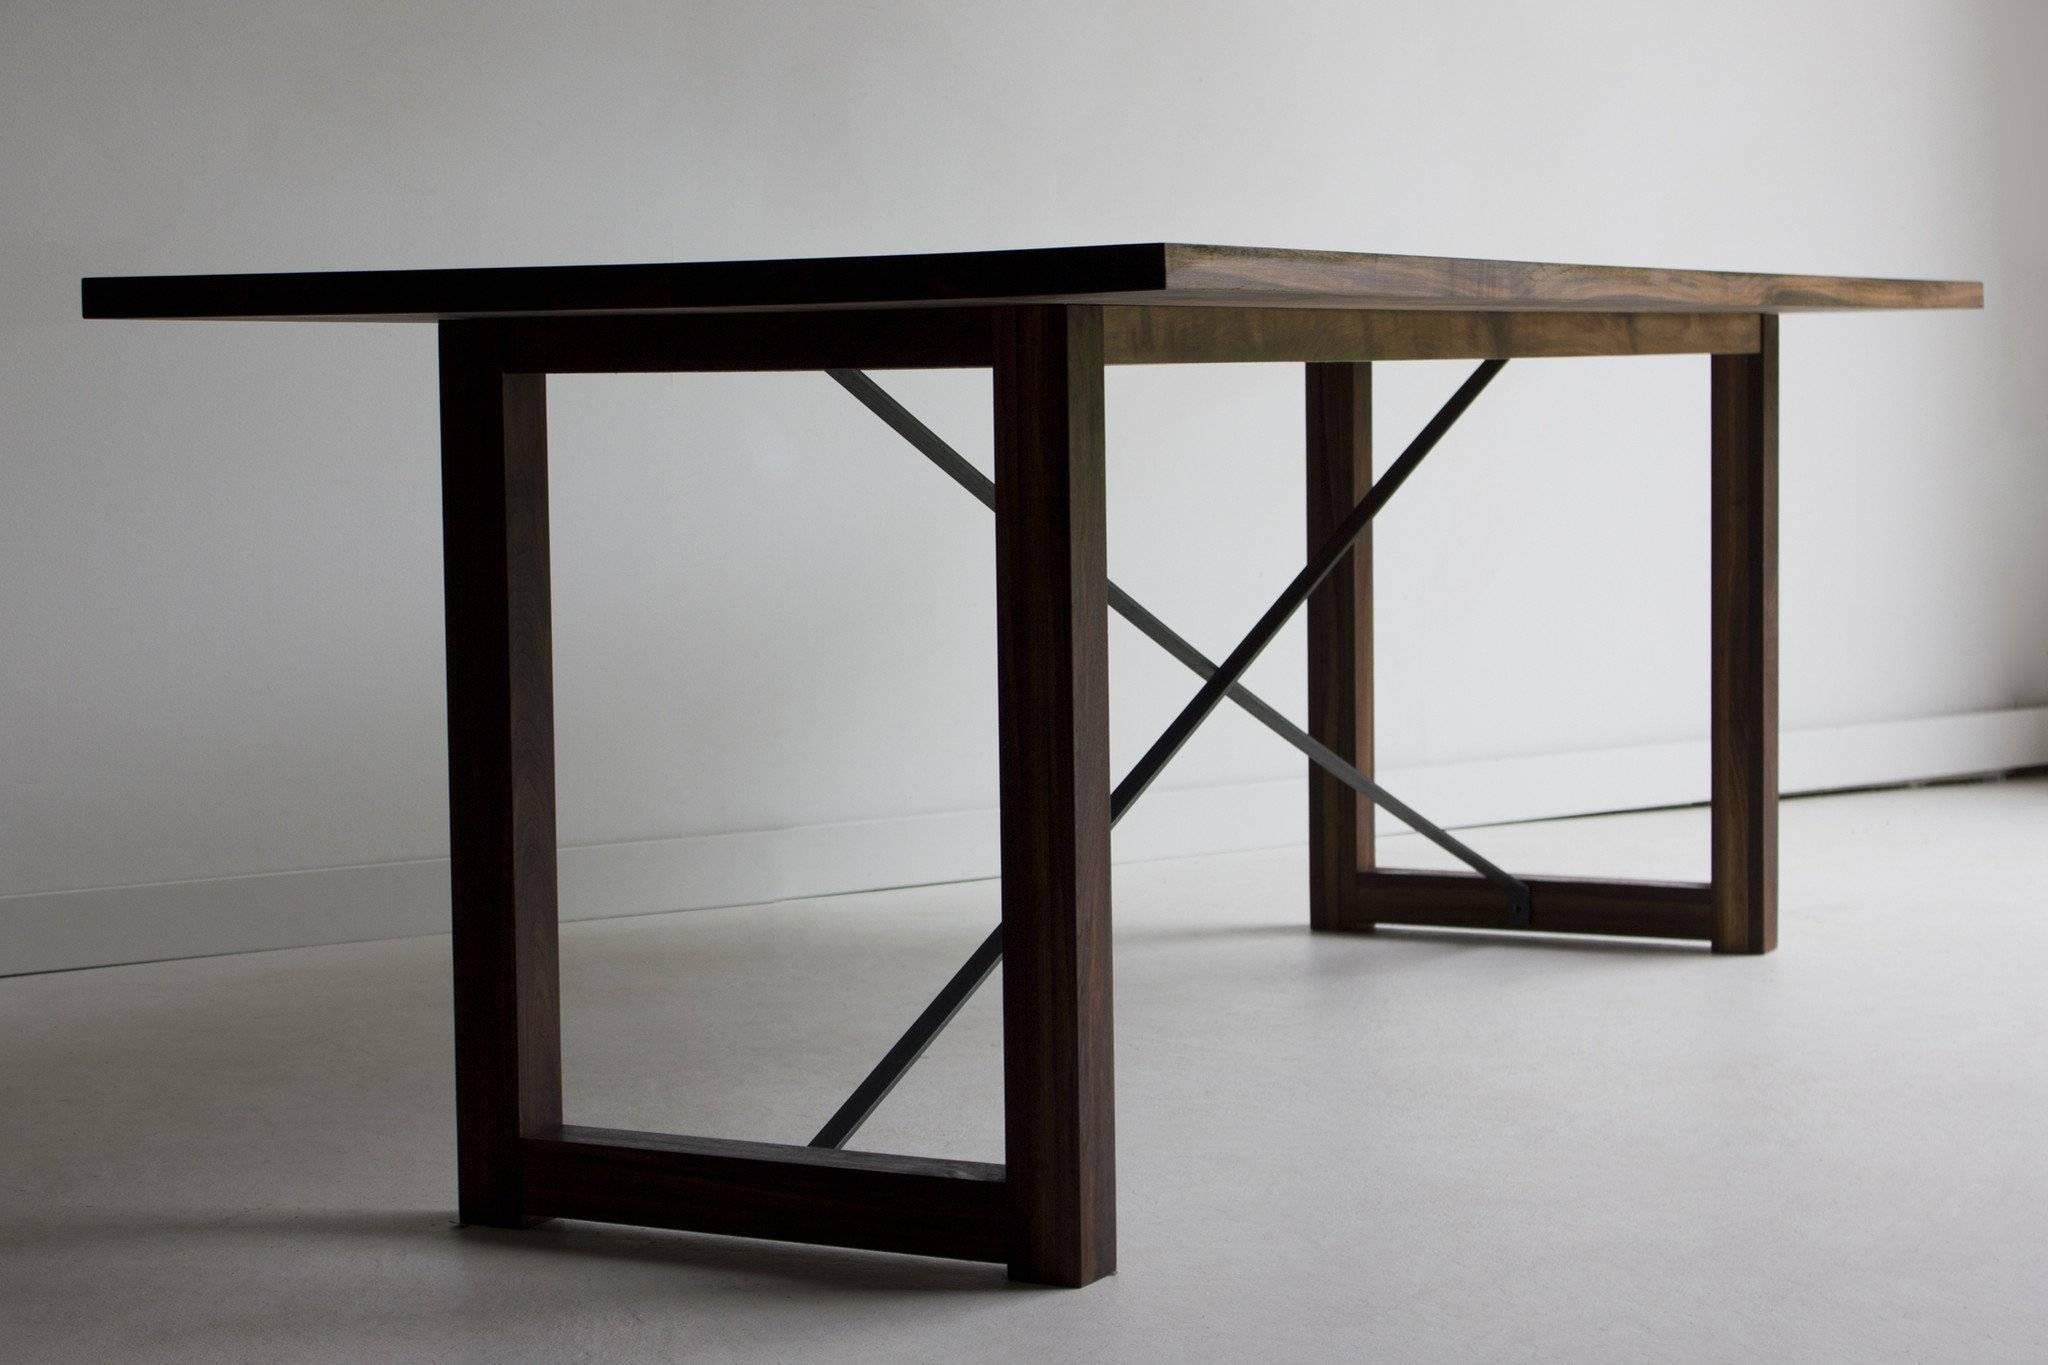 Moderner Esstisch aus Holz - 0116

Dieser moderne Esstisch aus Holz wird im Herzen von Ohio aus lokalem Holz hergestellt. Wir verwenden den Tisch sowohl als Esstisch als auch als Schreibtisch. Jeder Tisch ist aus massivem schwarzem Nussbaumholz